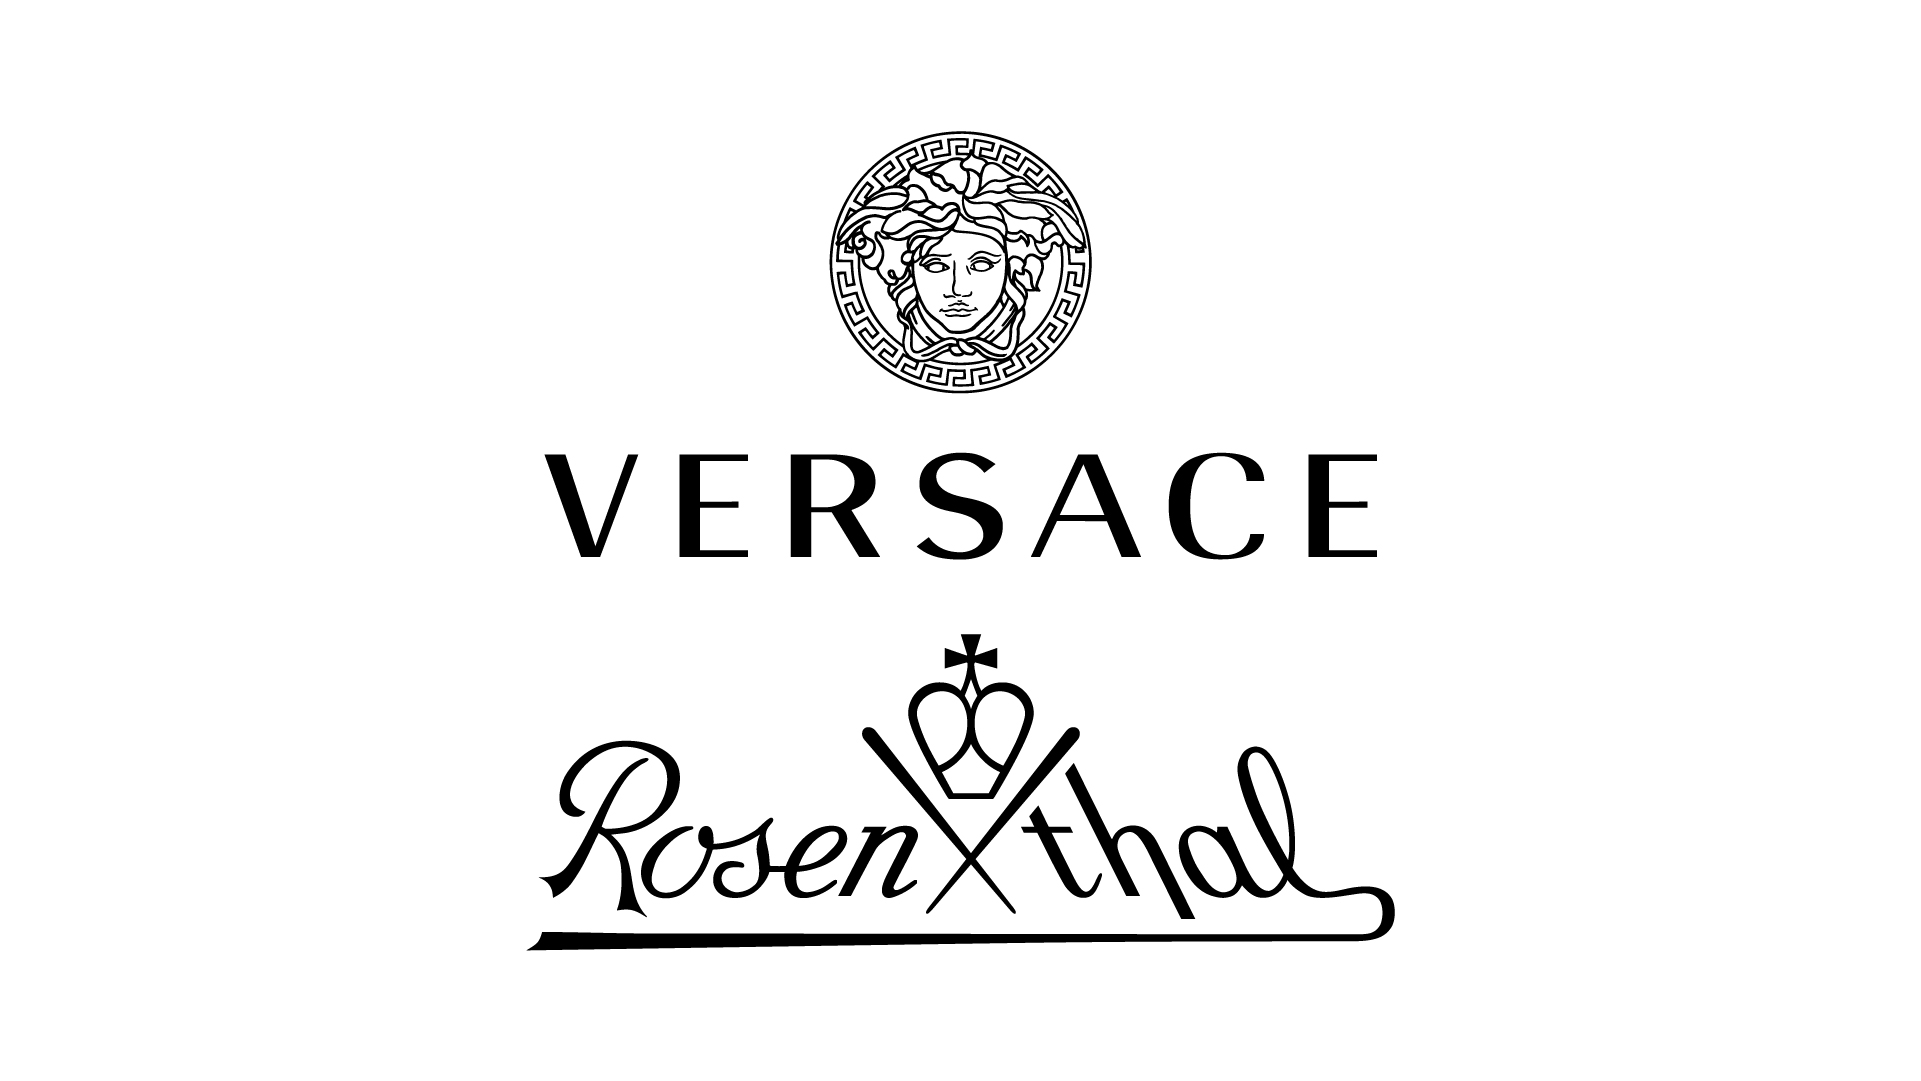 Versace og Rosenthal logo